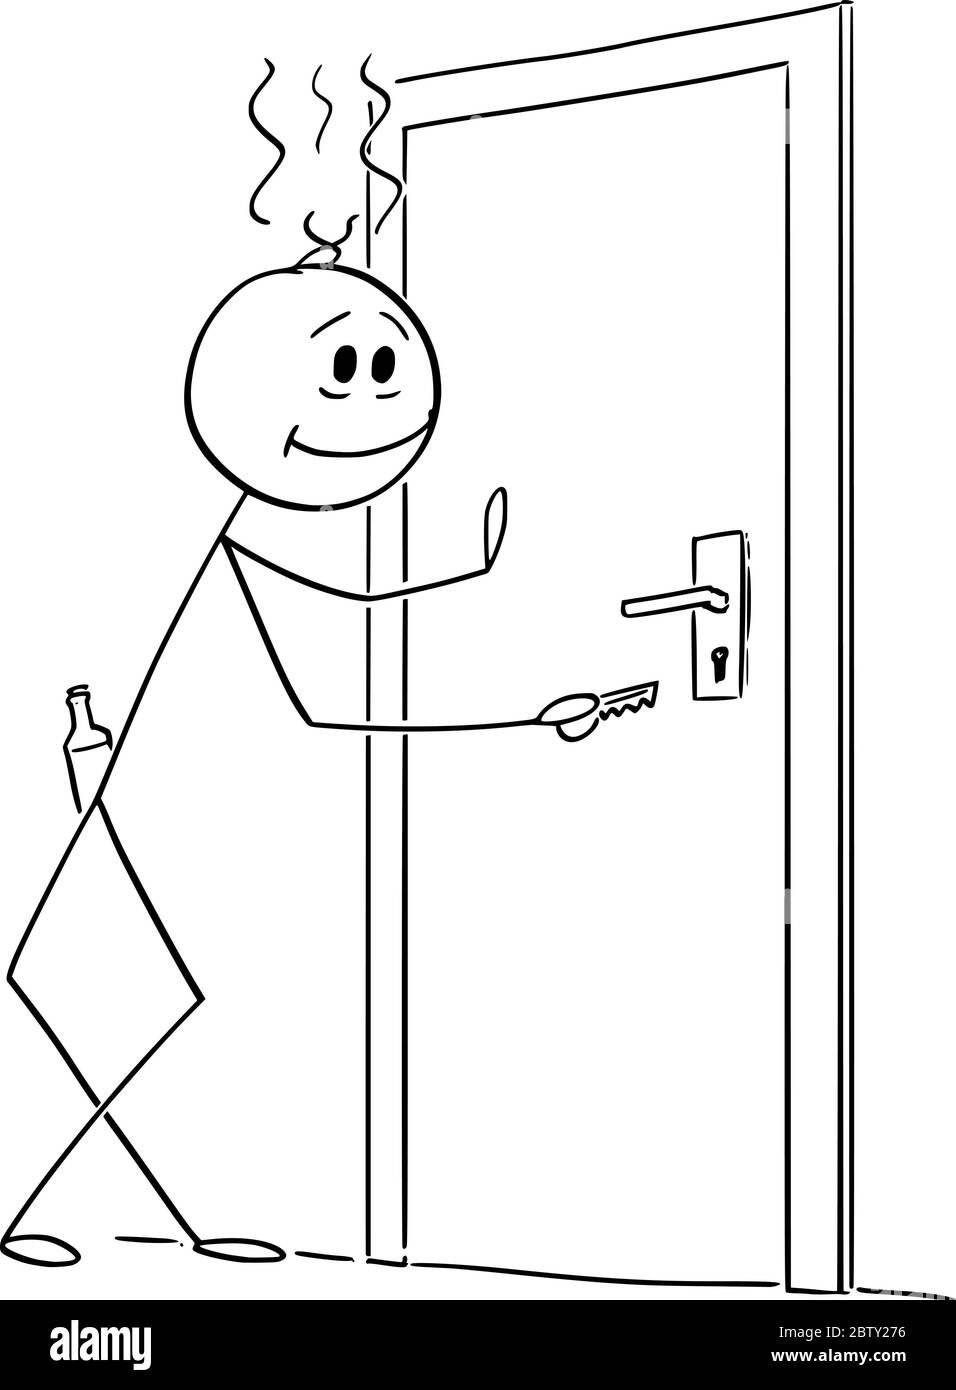 Vektor Cartoon Stick Figur Zeichnung konzeptionelle Illustration von betrunkenen Mann nach Hause zurückkehren. Konzept des Alkoholismus. Stock Vektor